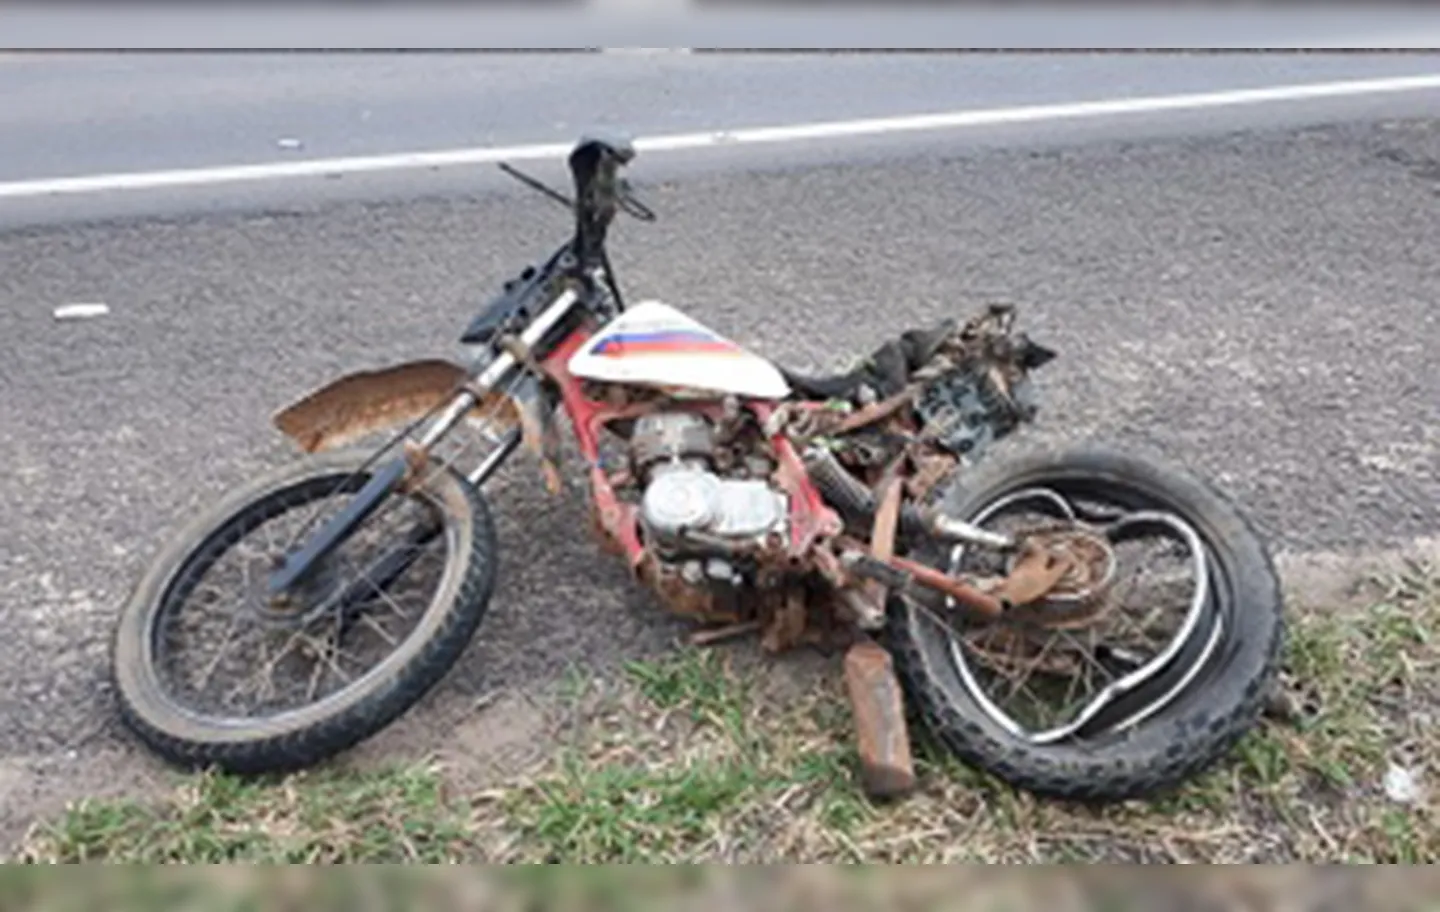 Três vítimas trafegavam na moto quando ocorreu o acidente | Foto: Reprodução | Blog do Netto Maravilha